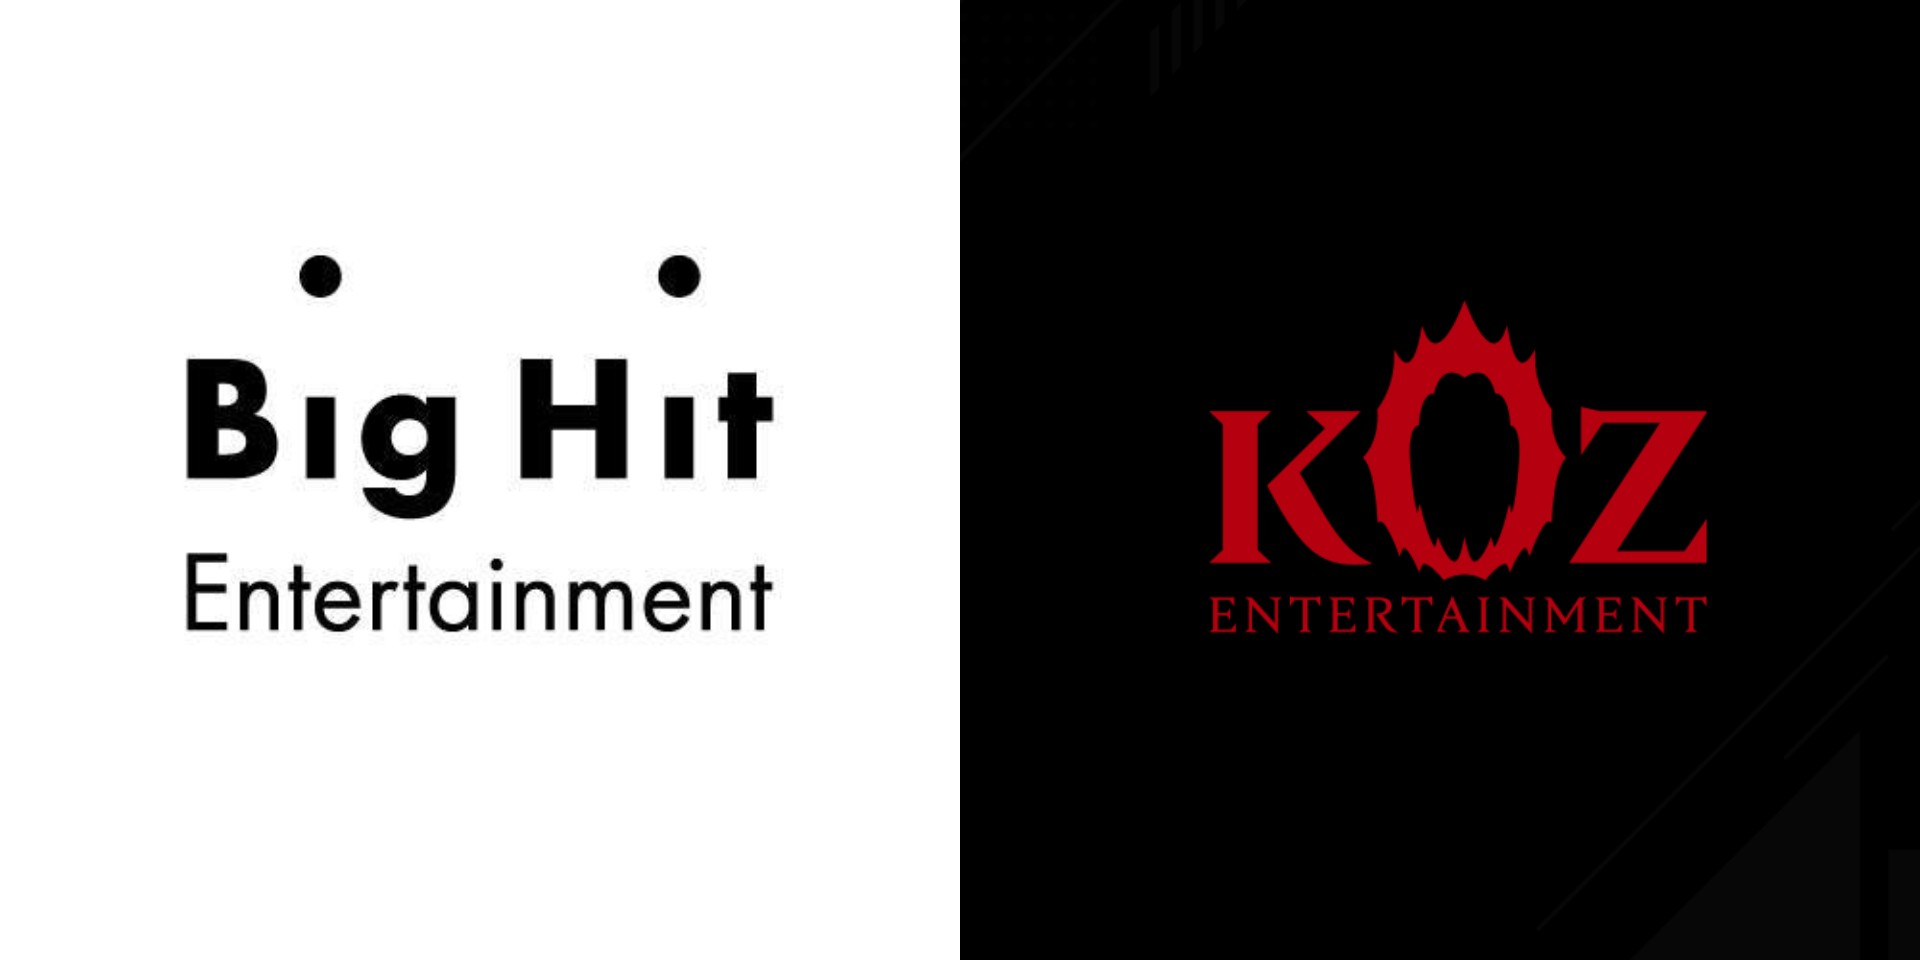 Big Hit Entertainment is acquiring KOZ Entertainment, a hip-hop label